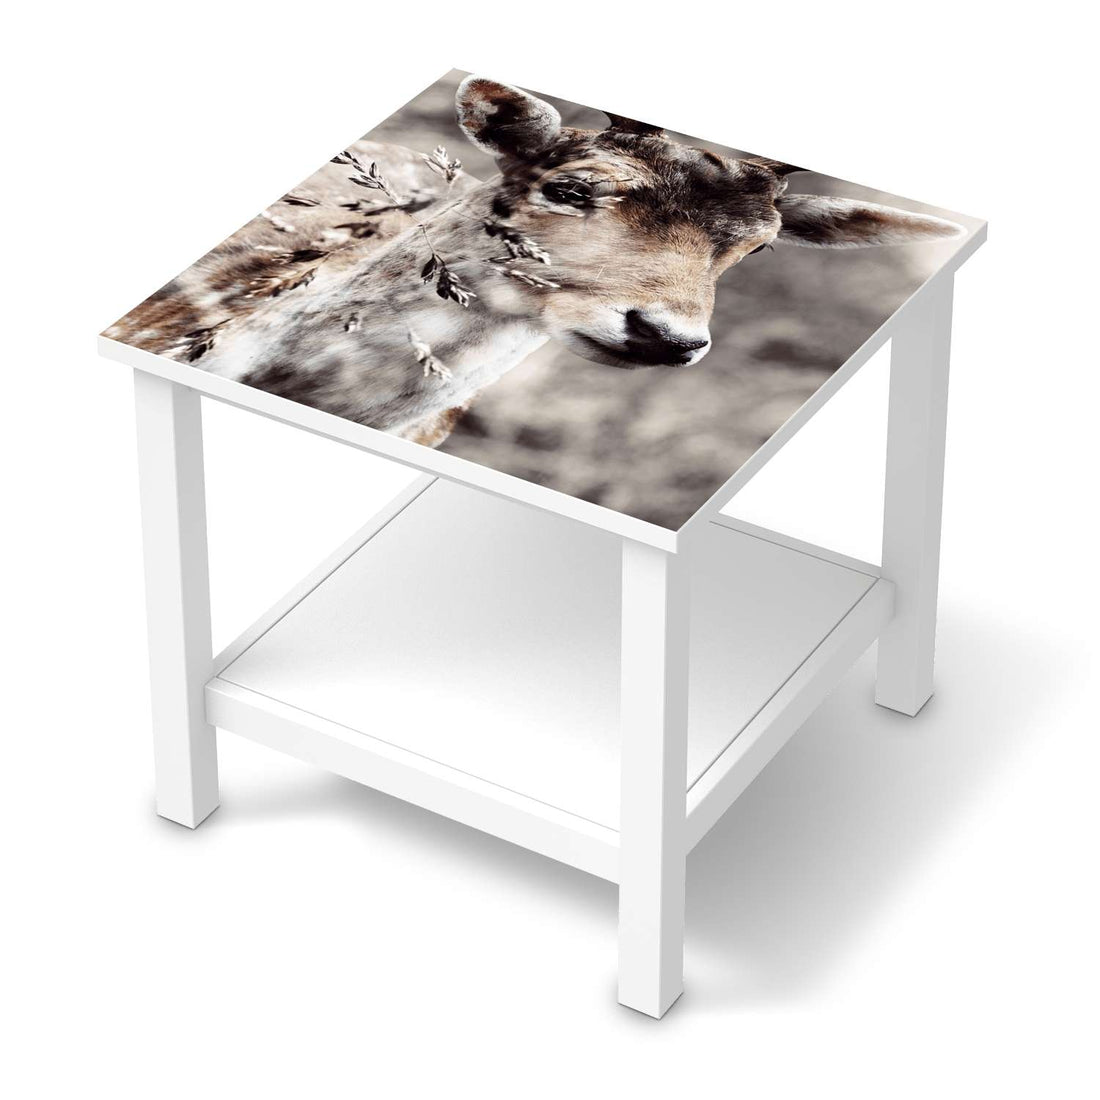 Möbel Klebefolie Hirsch - IKEA Hemnes Beistelltisch 55x55 cm  - weiss